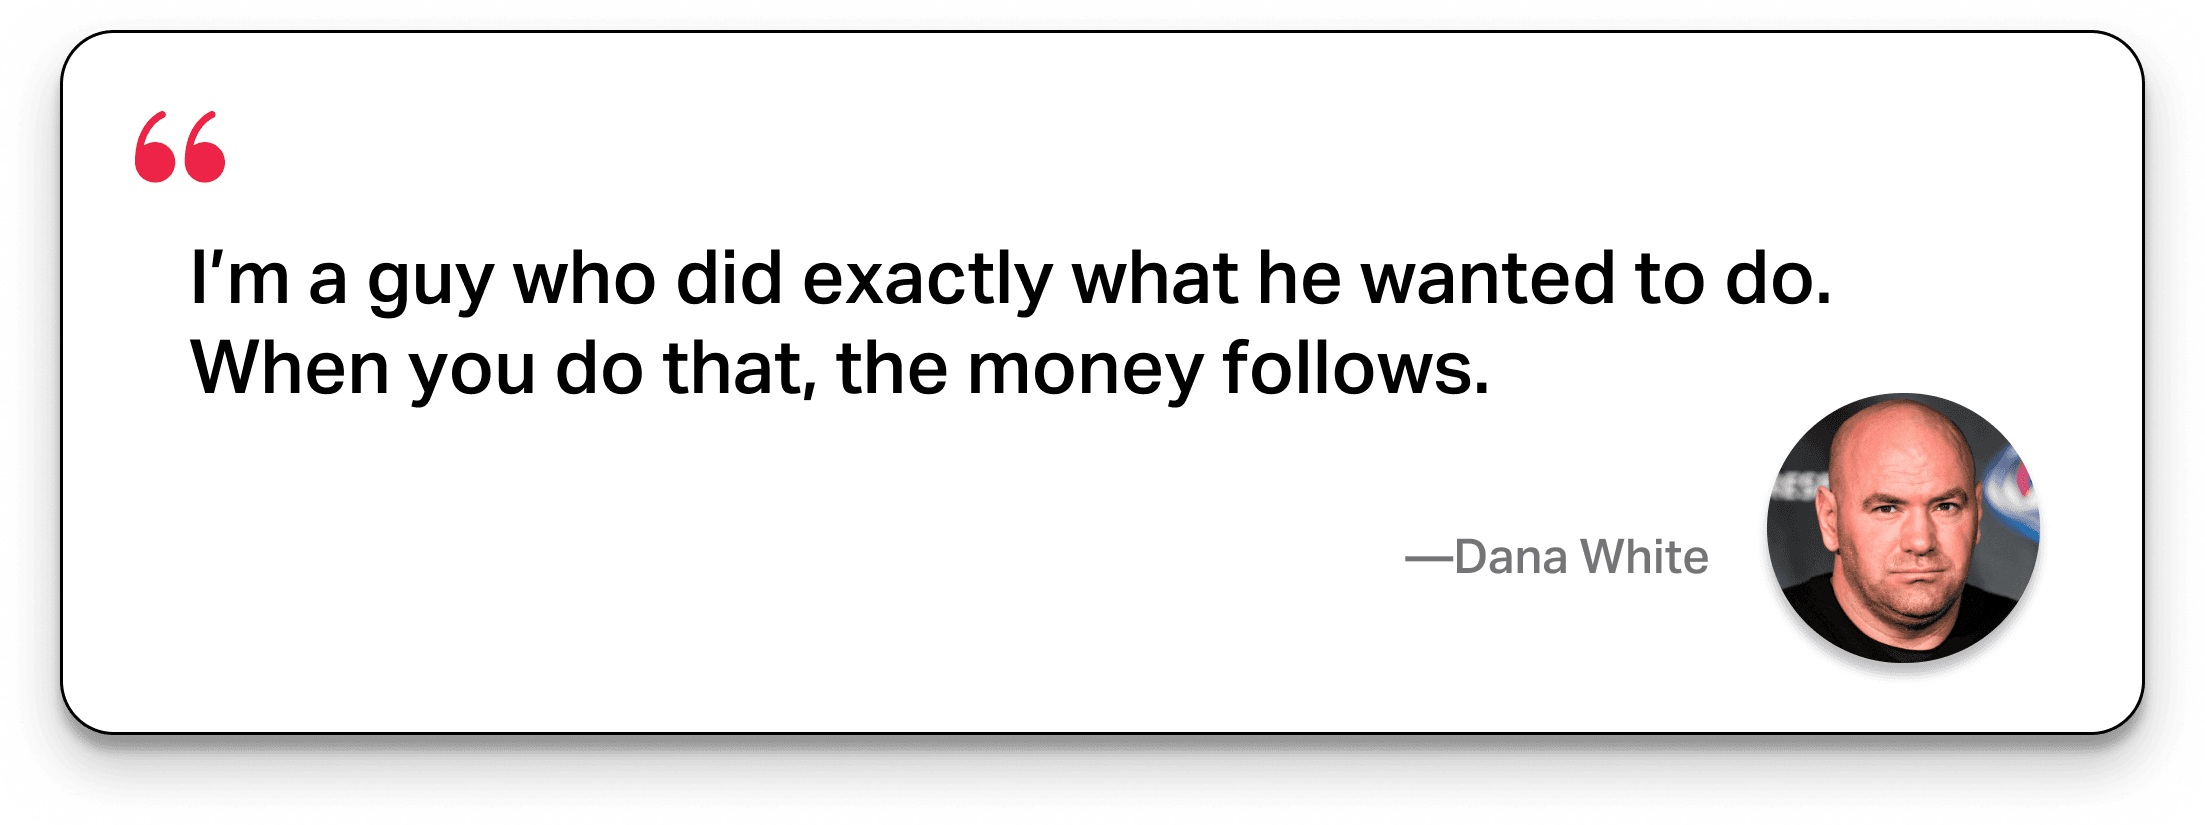 Dana White net worth 2022: What is Dana White's annual salary?